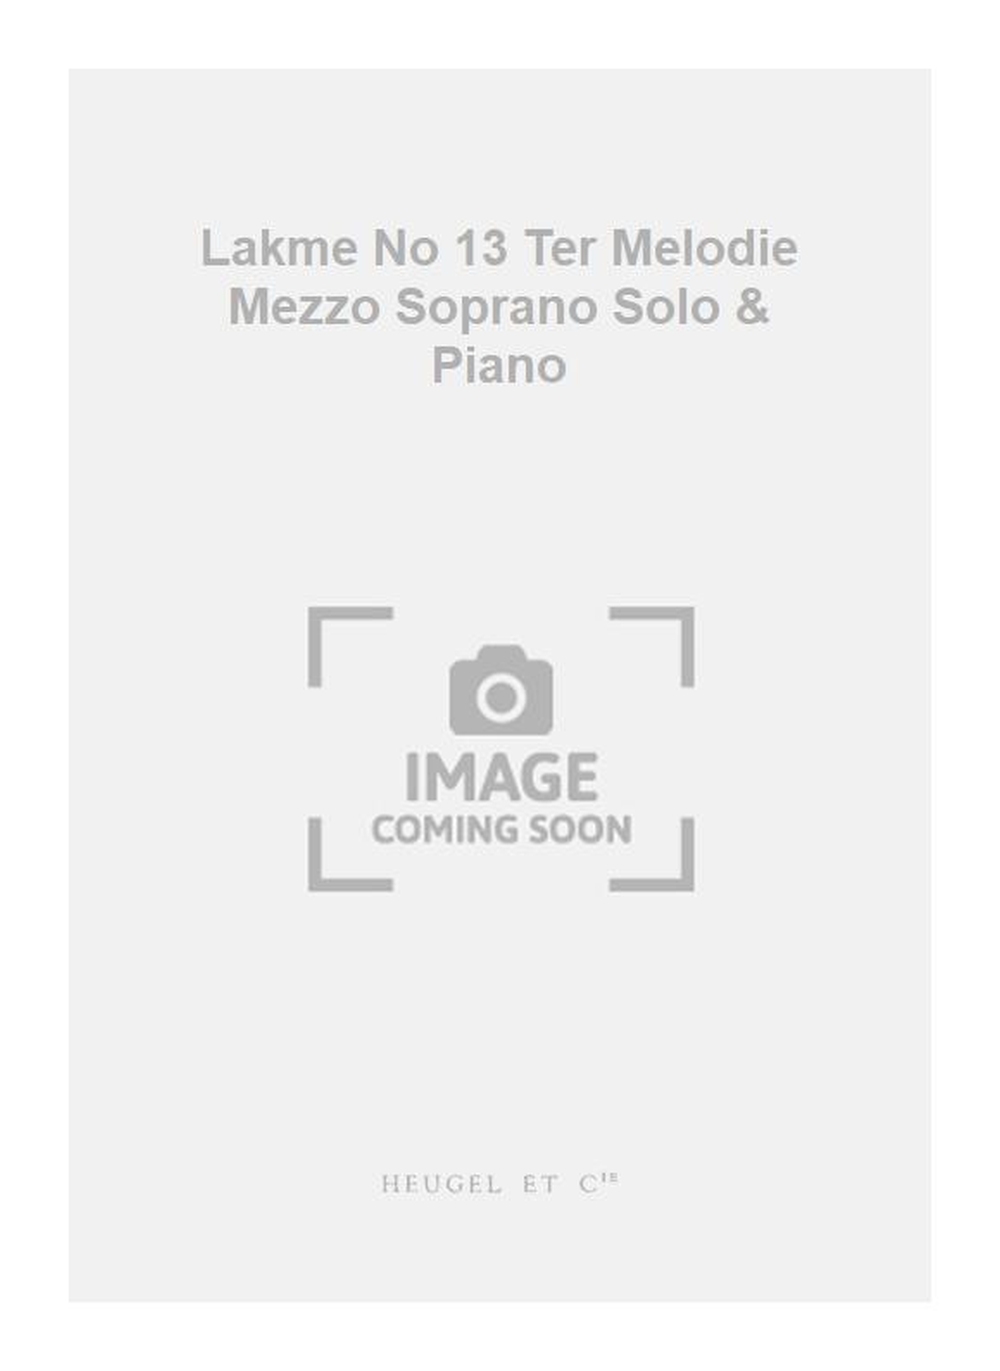 Léo Delibes: Lakme No 13 Ter Melodie Mezzo Soprano Solo & Piano